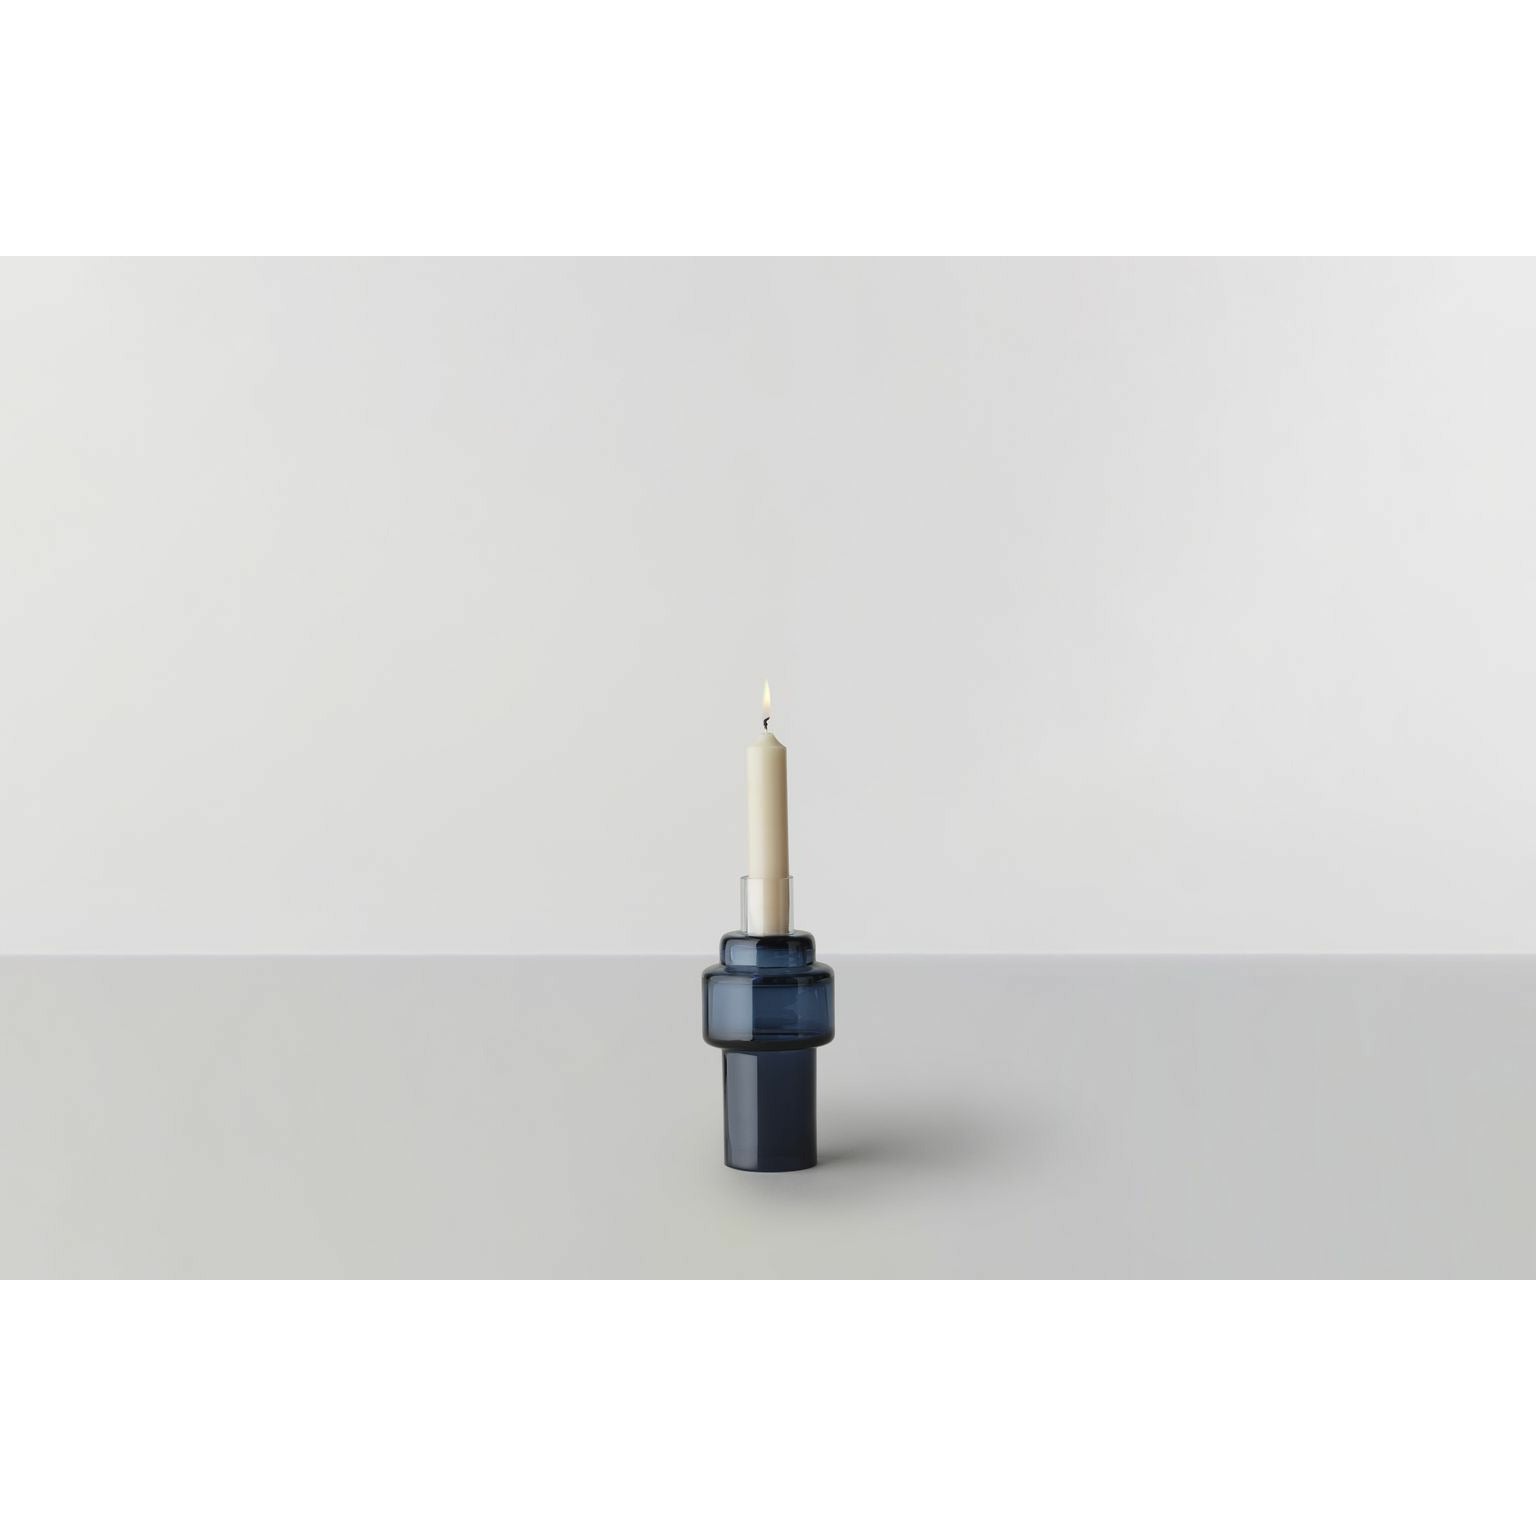 RO -samling nr. 55 Glass Candlestick, Indigo Blue